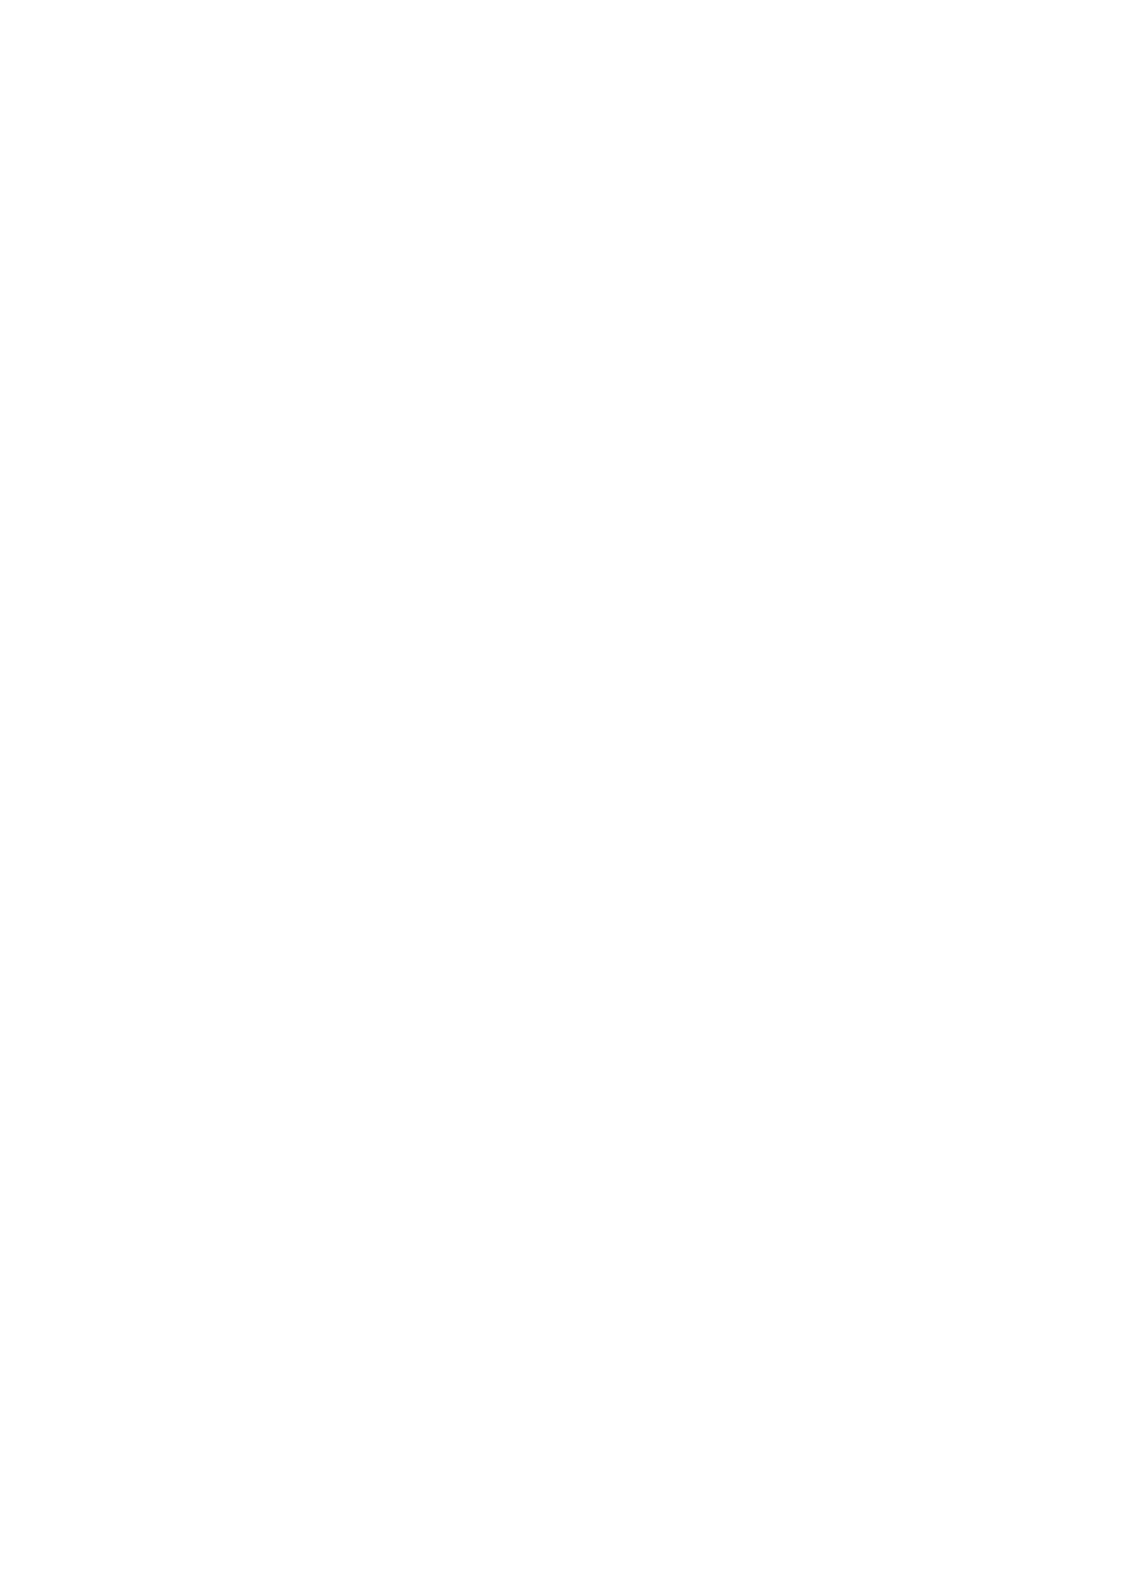 Sydbank A/S logo pour fonds sombres (PNG transparent)